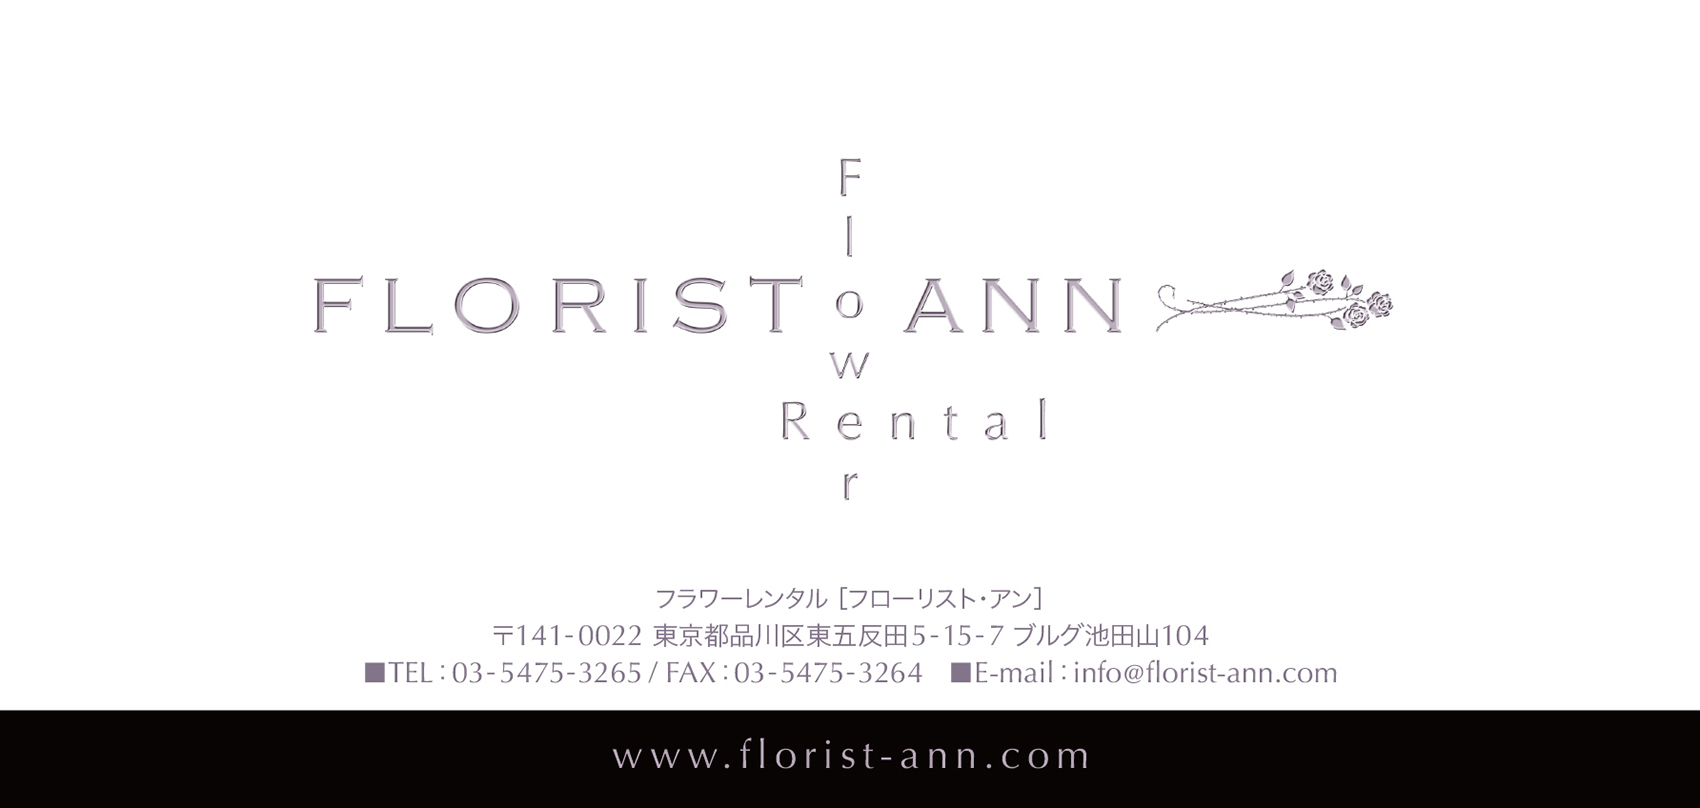 プリザーブドフラワーアレンジ『FLORIST ANN』様のリーフレット（折りパンフレット）画像